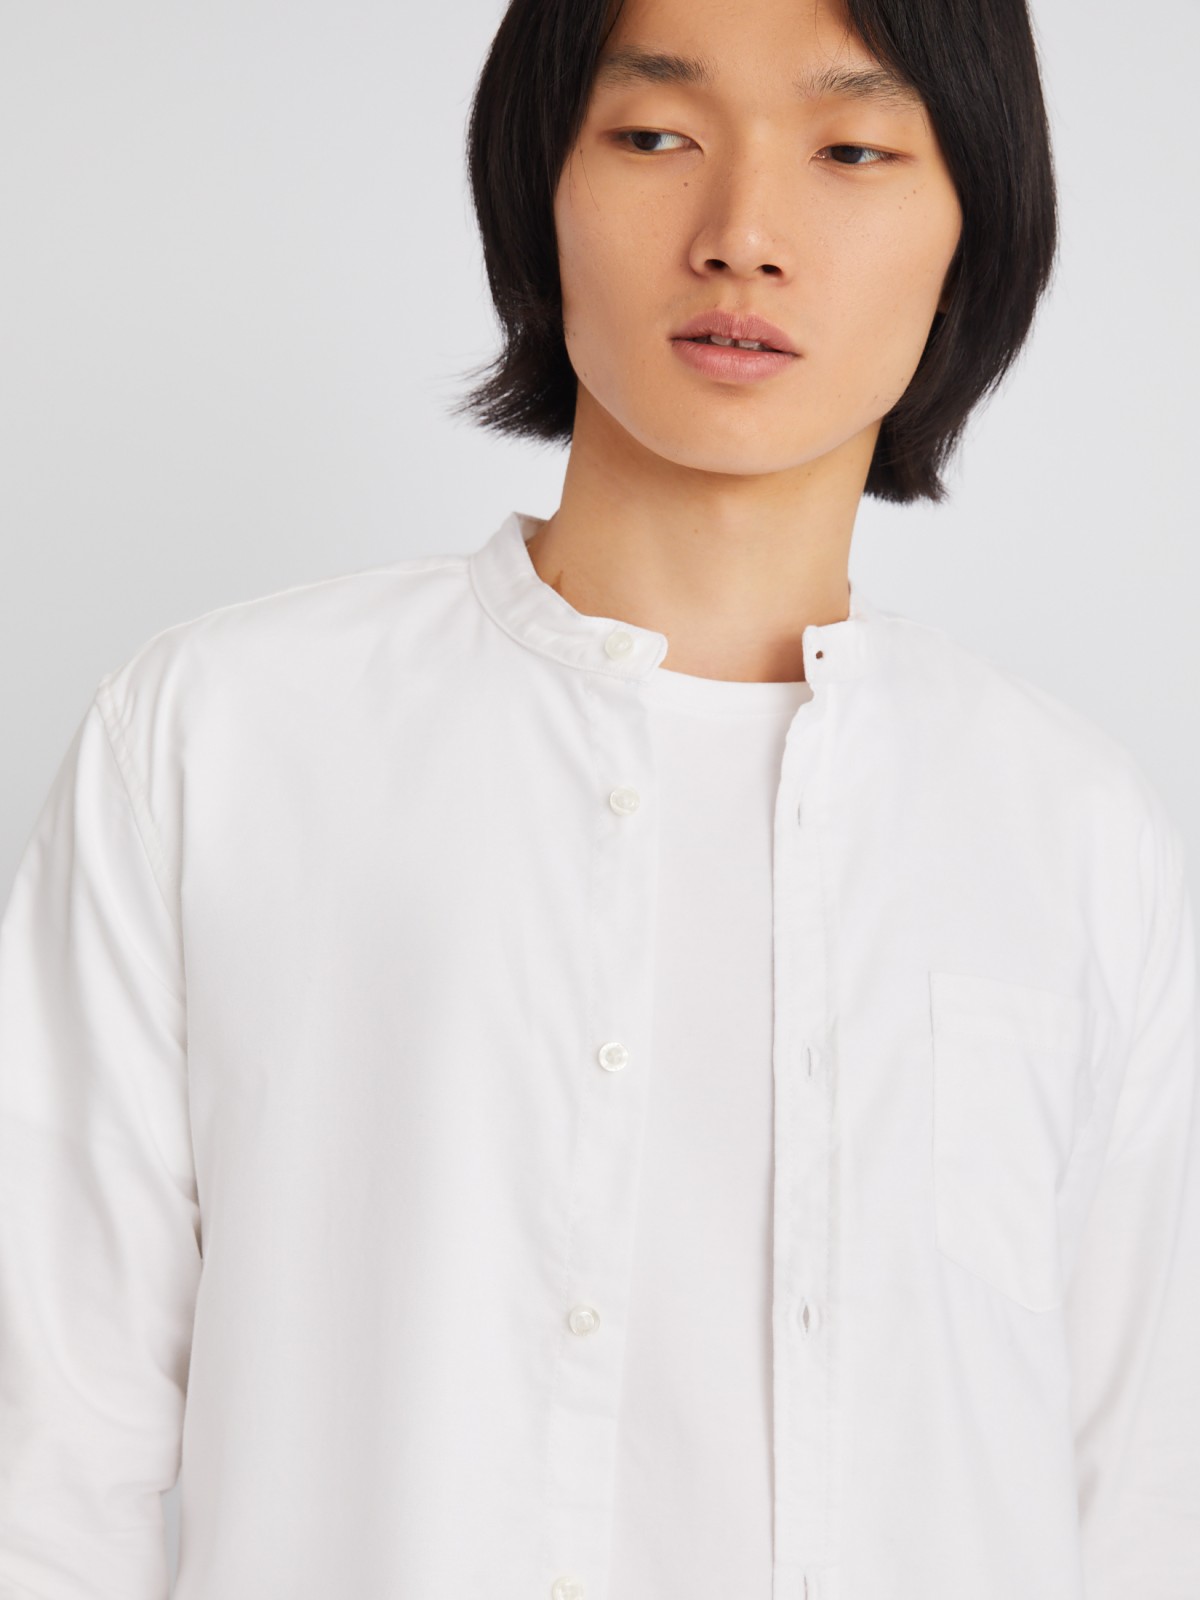 Офисная рубашка с воротником-стойкой и длинным рукавом zolla 21232214R043, цвет белый, размер S - фото 3